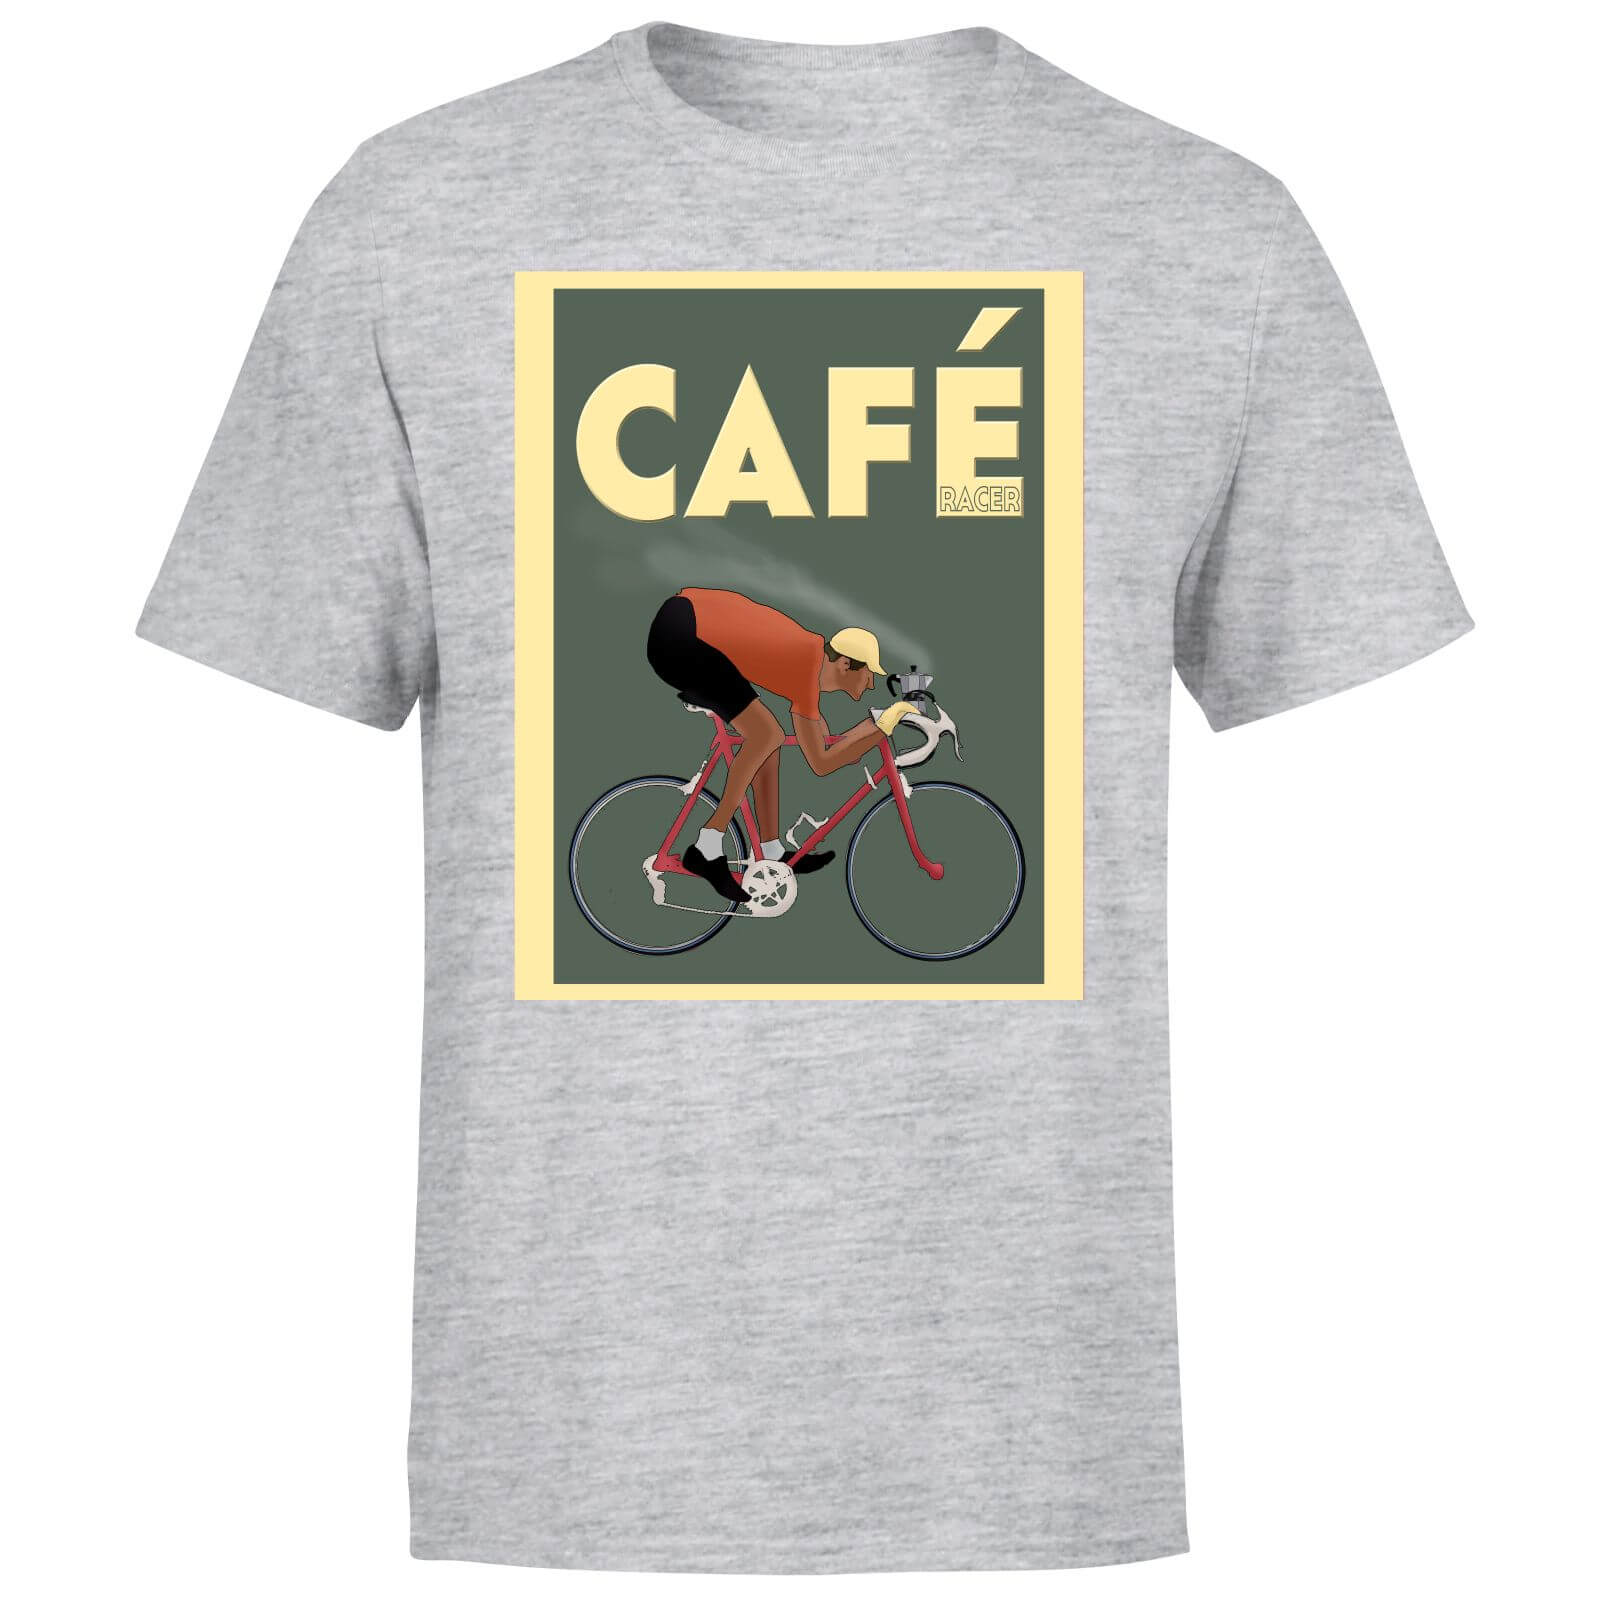 Cafe Racer Men's T-Shirt - Grey - 5XL - Grey